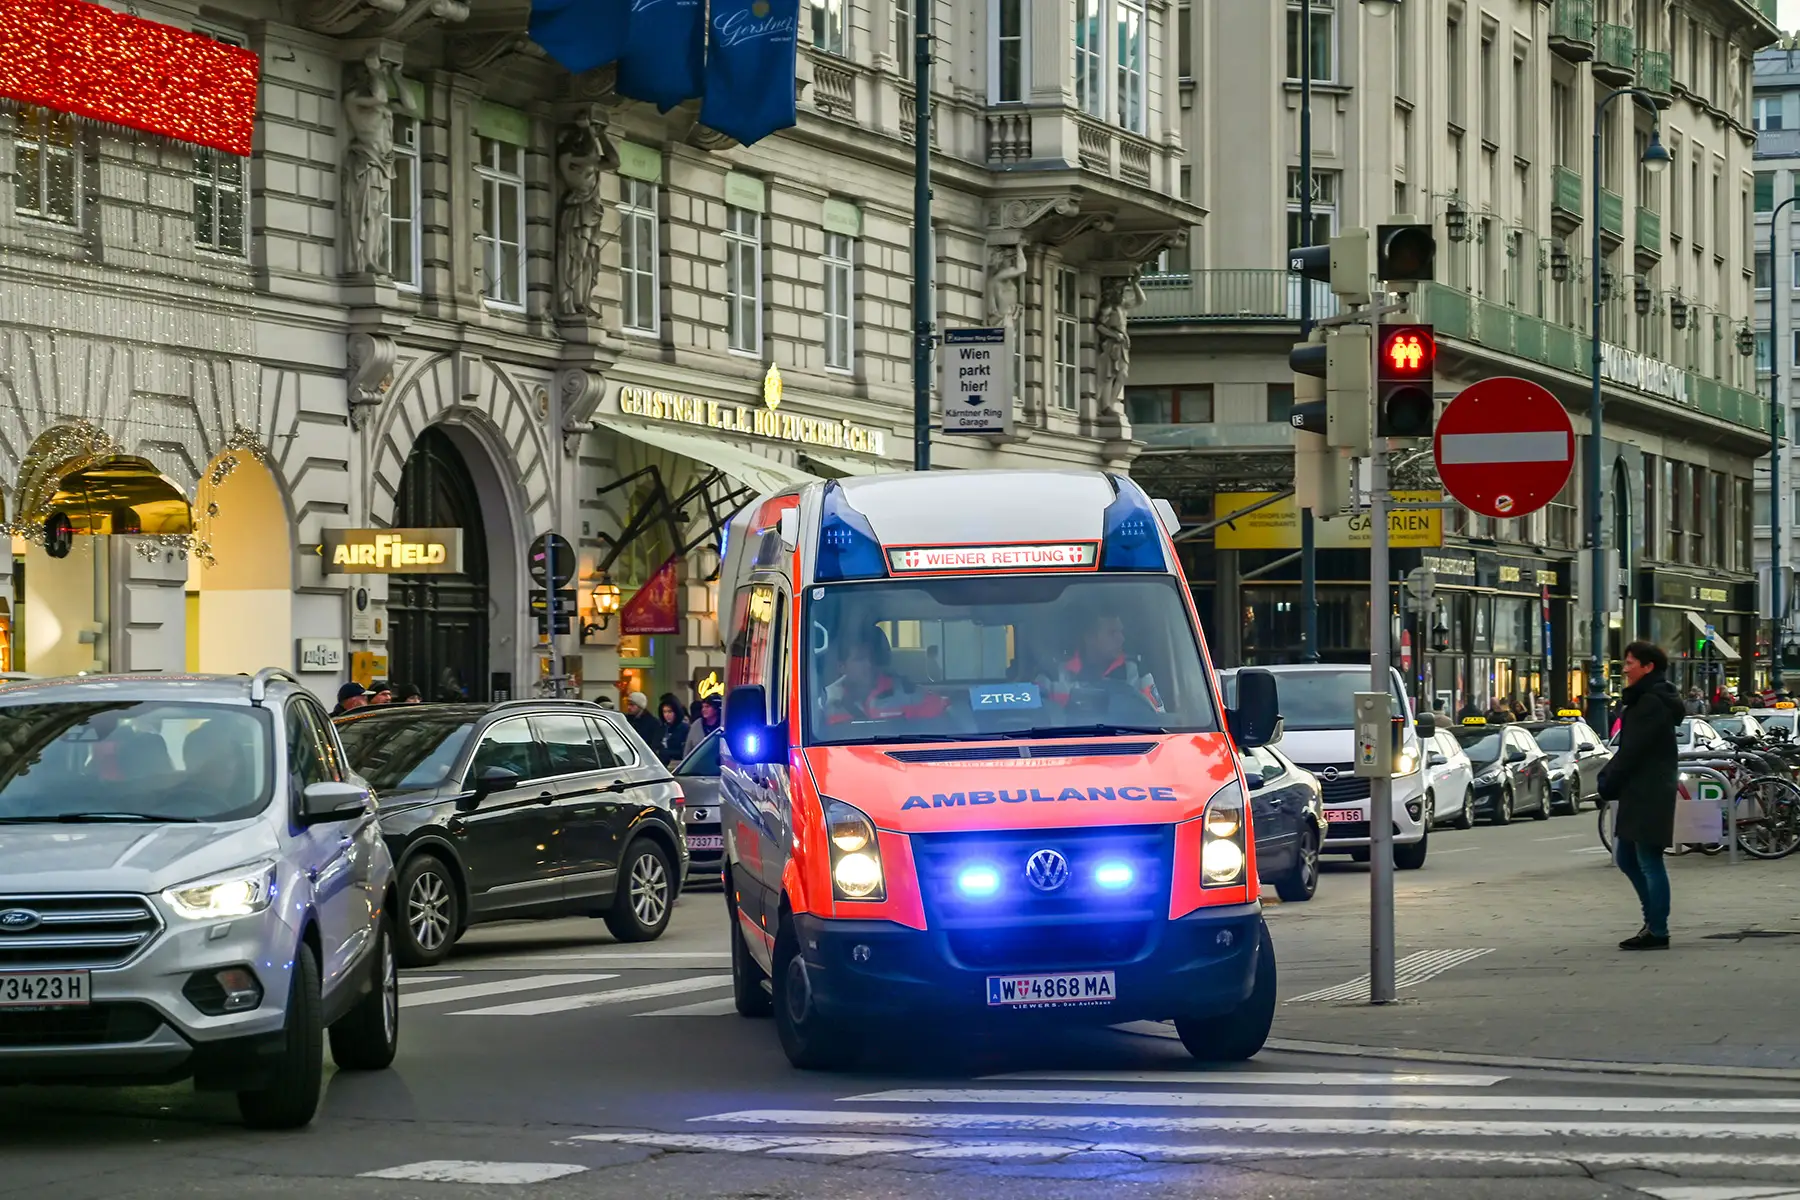 An ambulance in Vienna, Austria